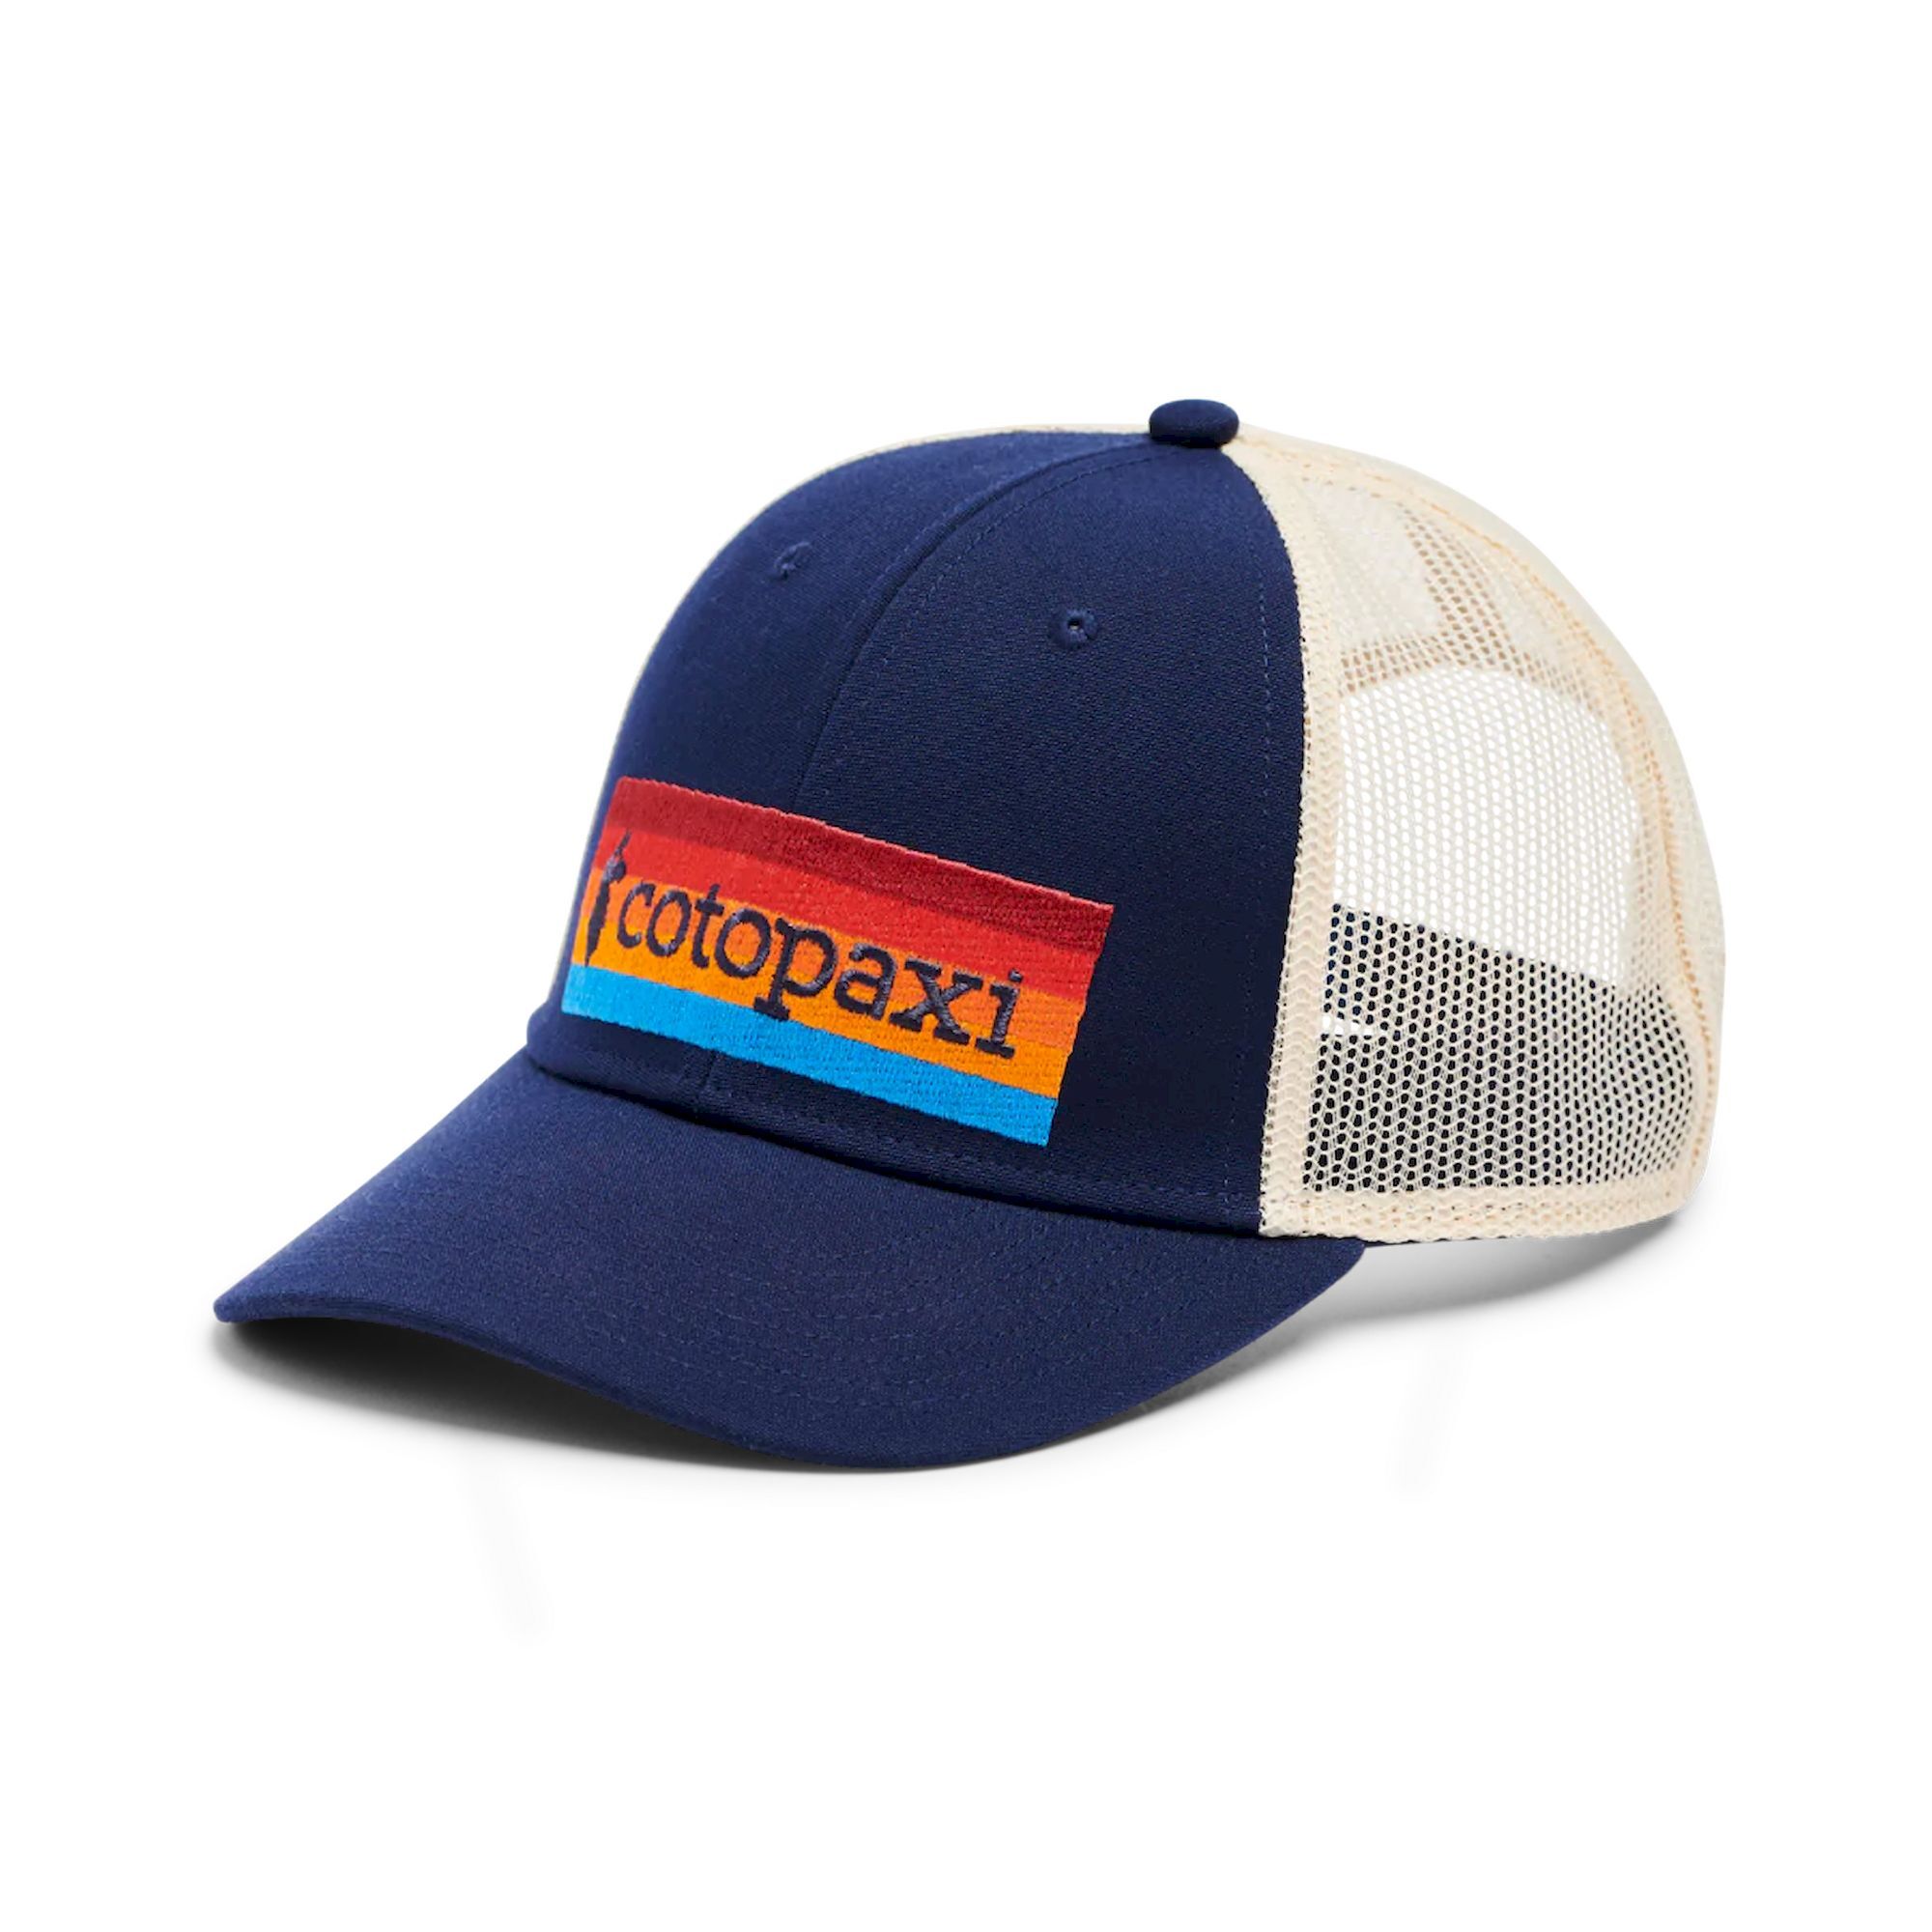 Cotopaxi On the Horizon Trucker Hat - Czapka z daszkiem | Hardloop